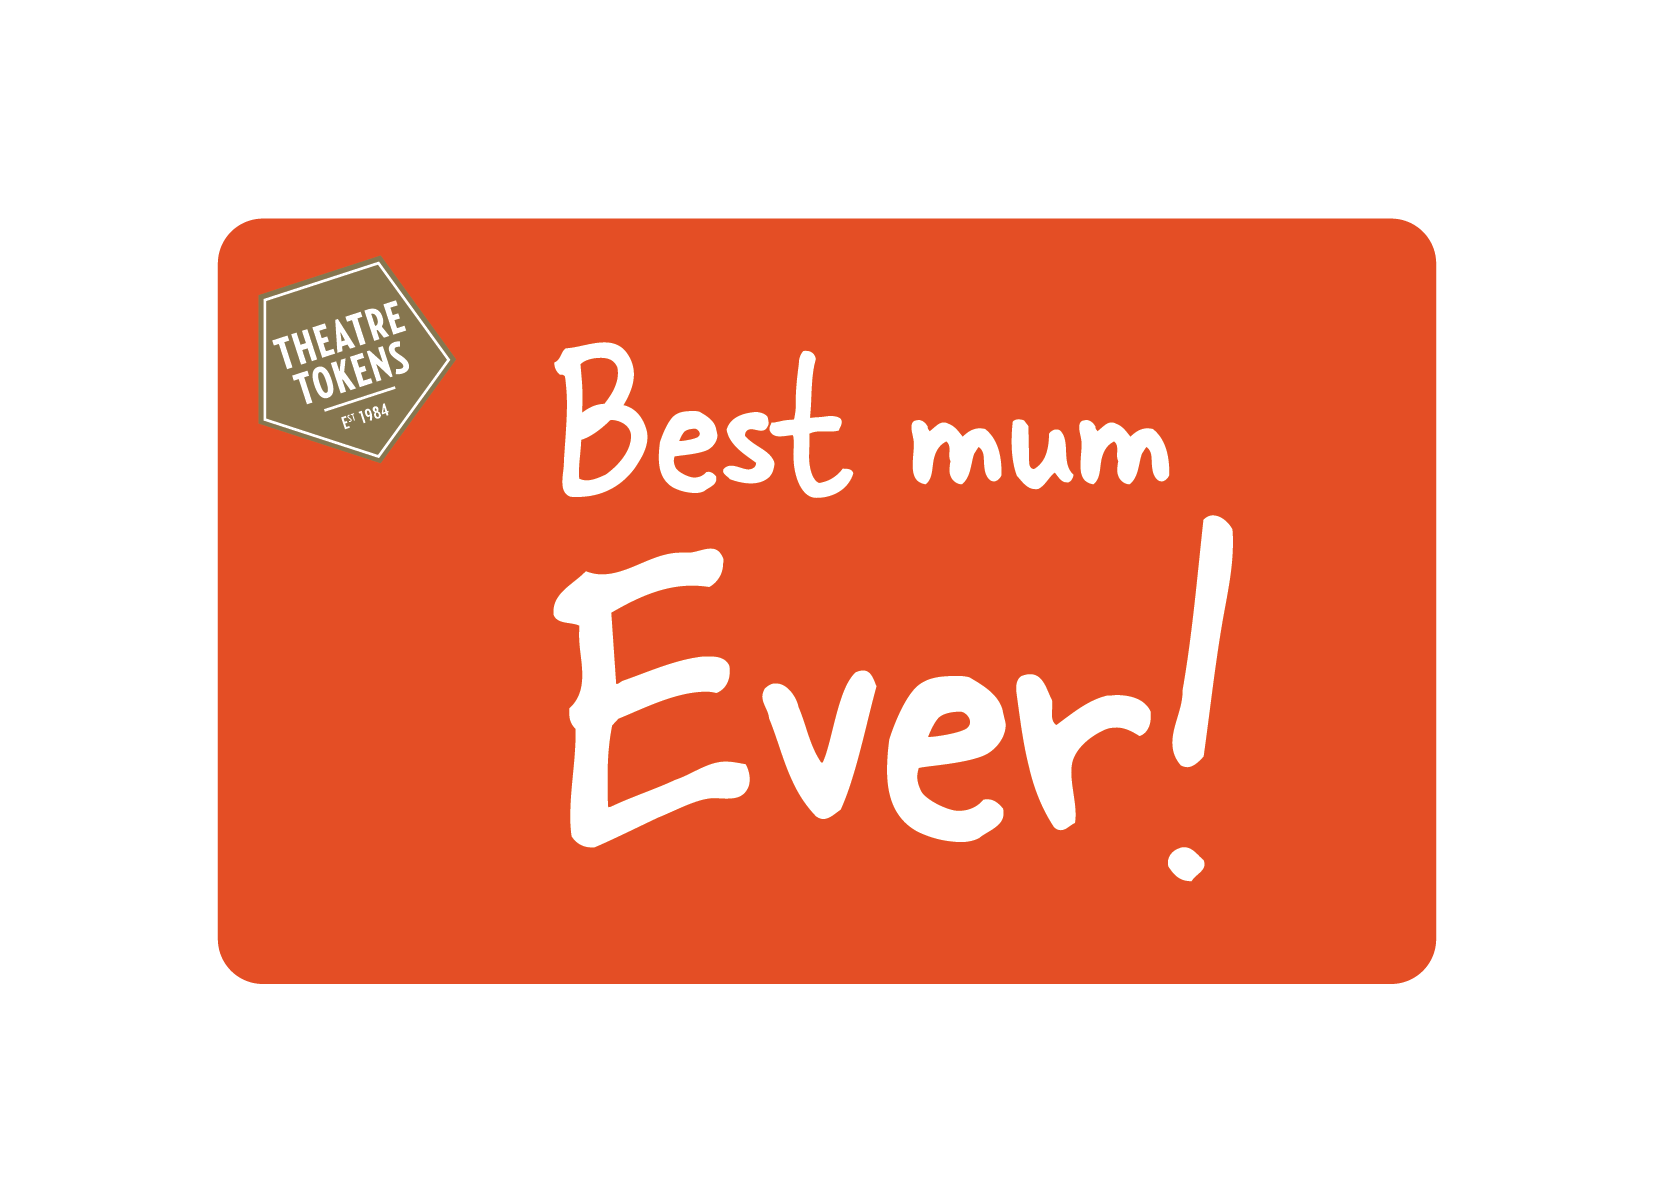 eGift - Best mum ever!